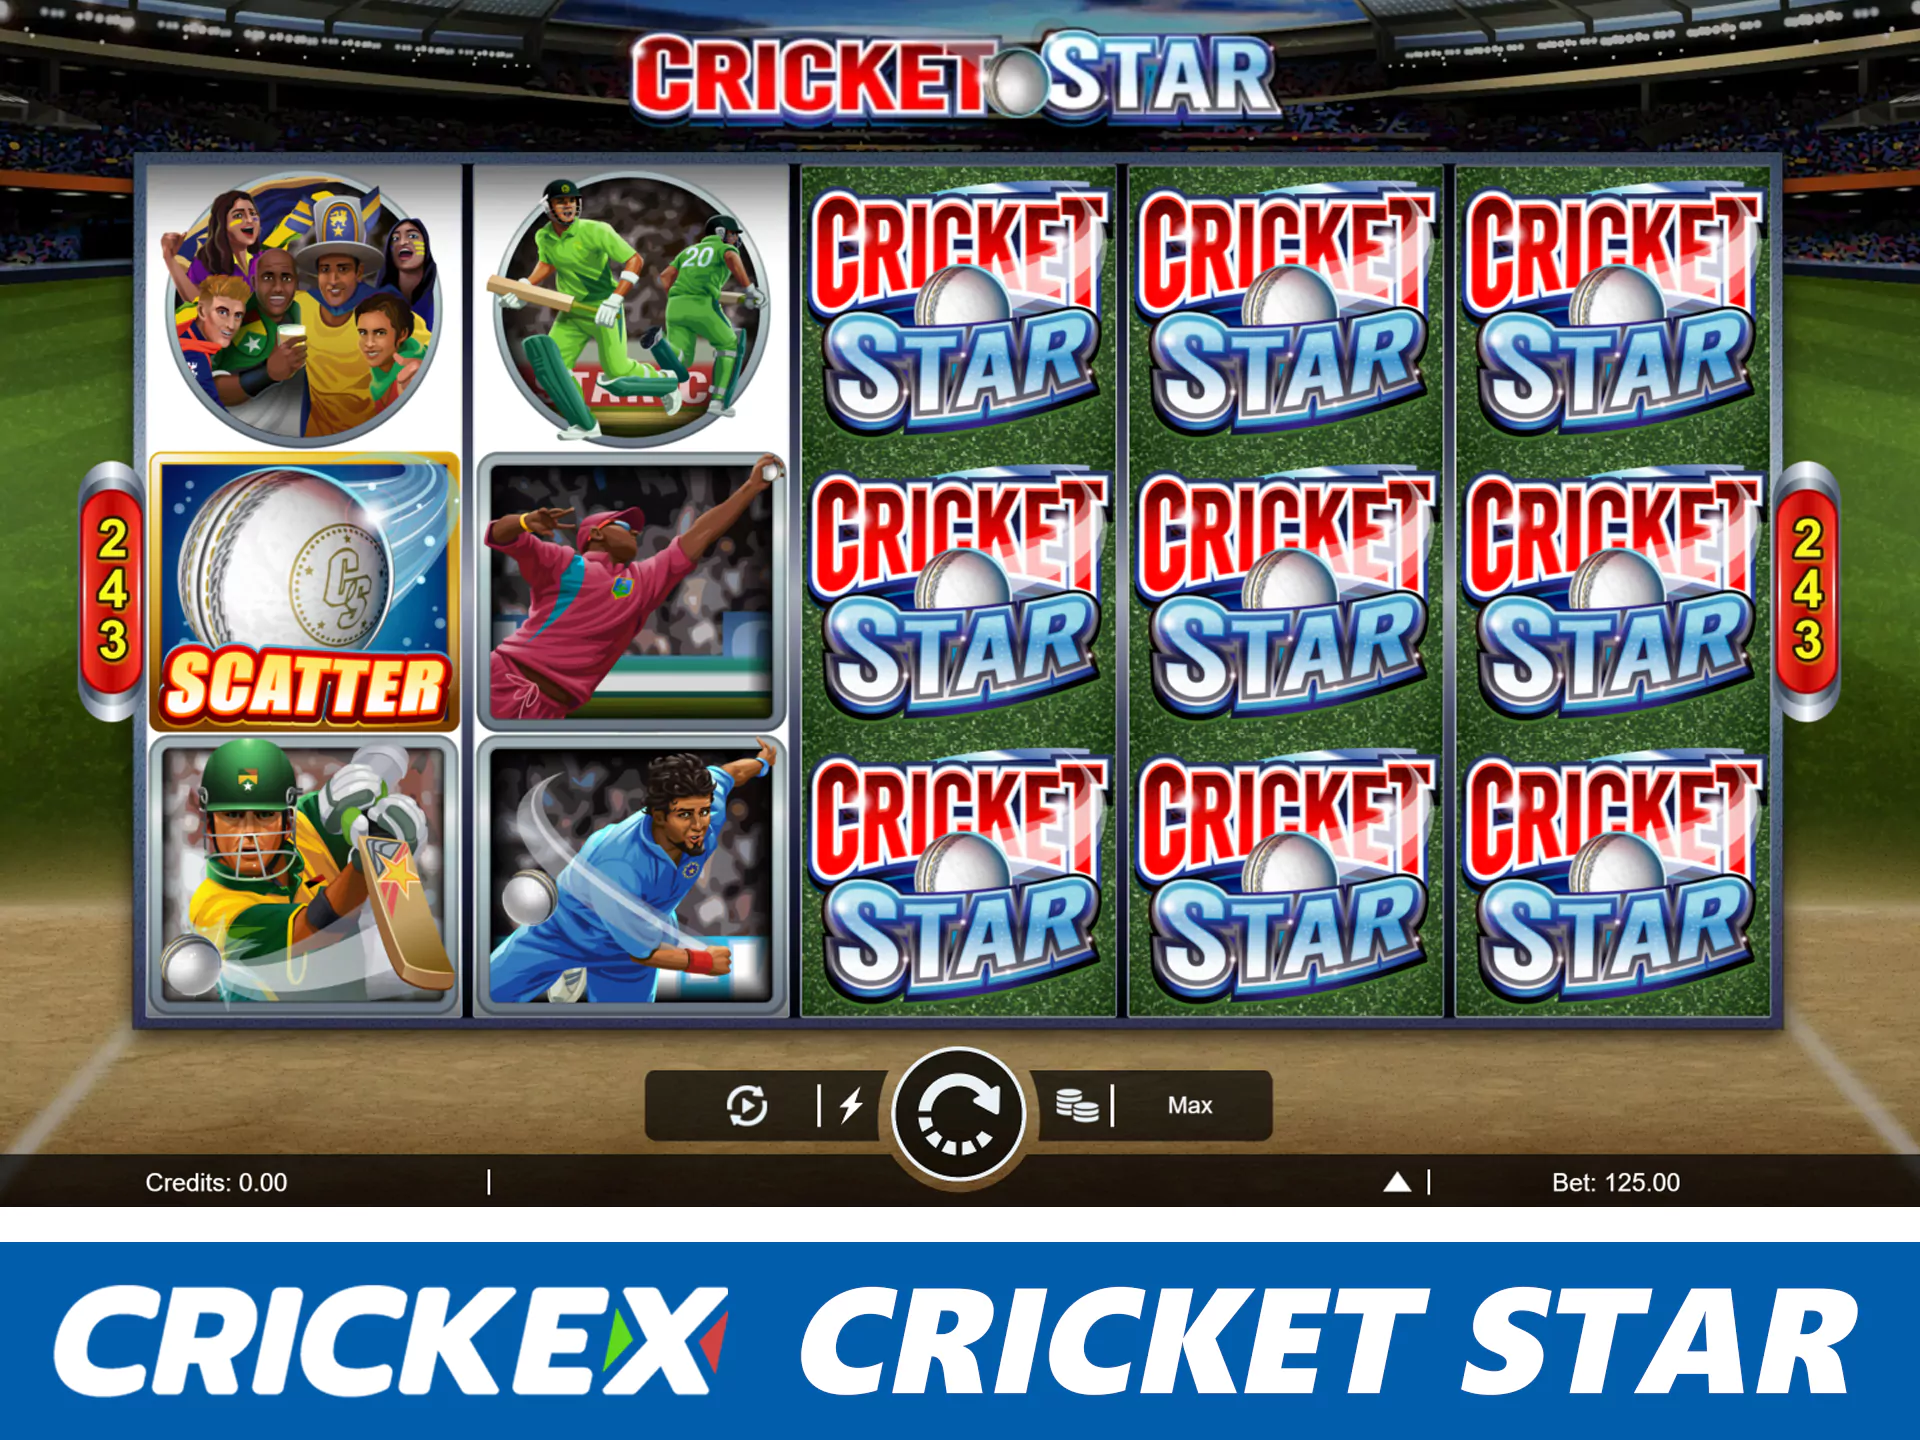 Play at cricket star slots and win big prizes.